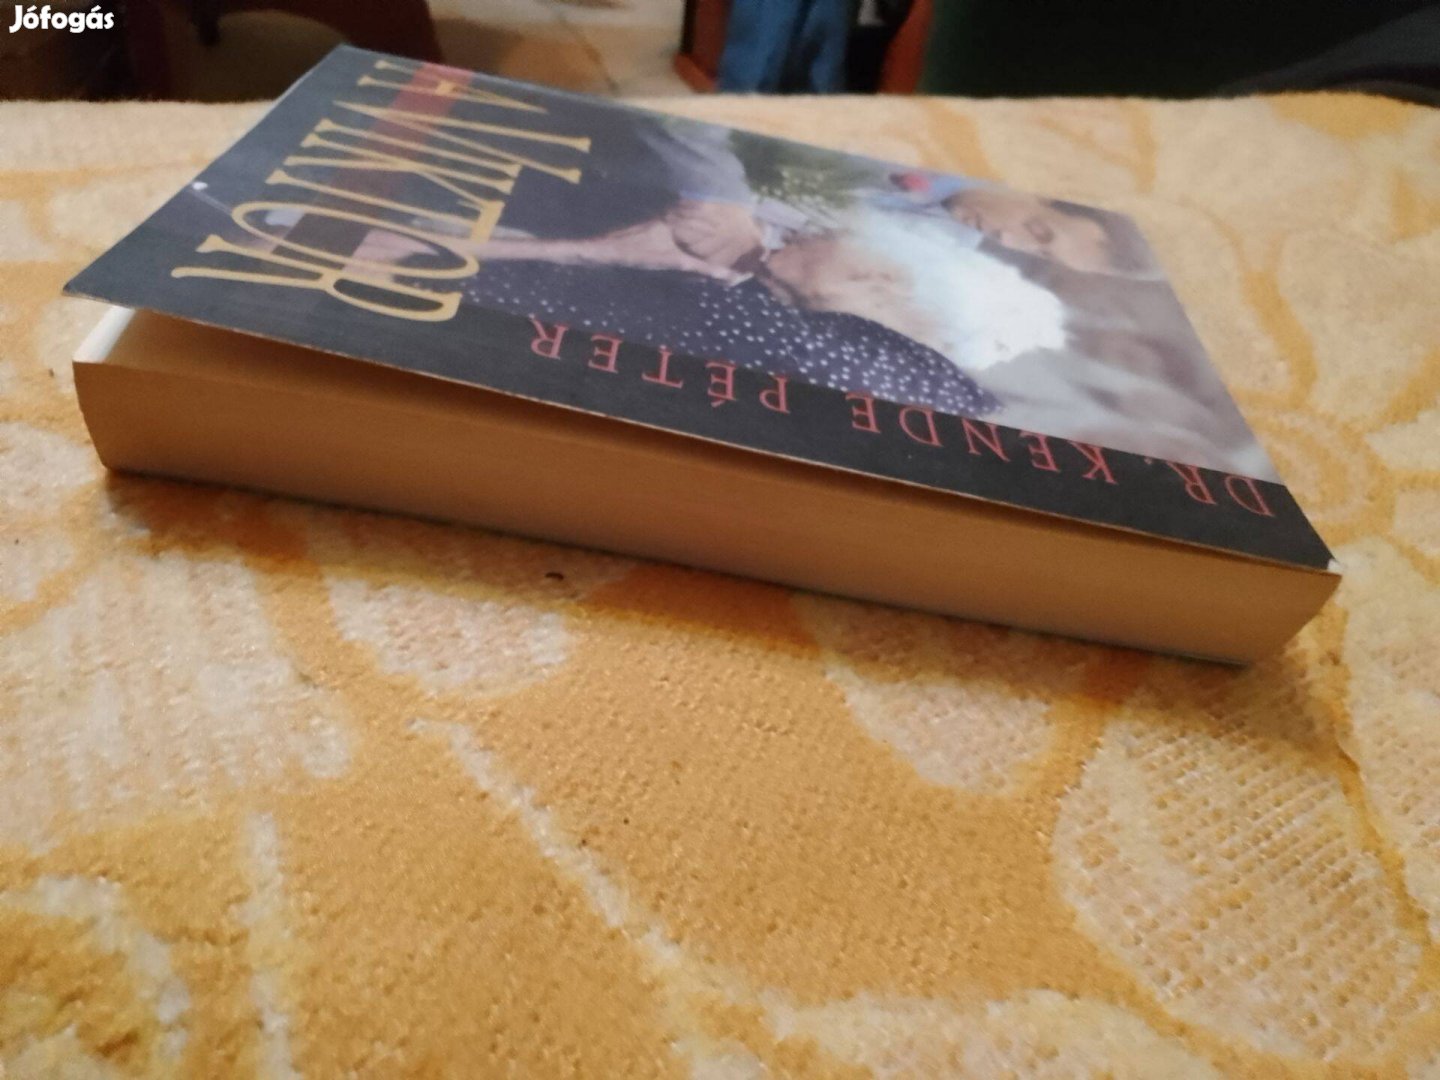 A Viktor könyv